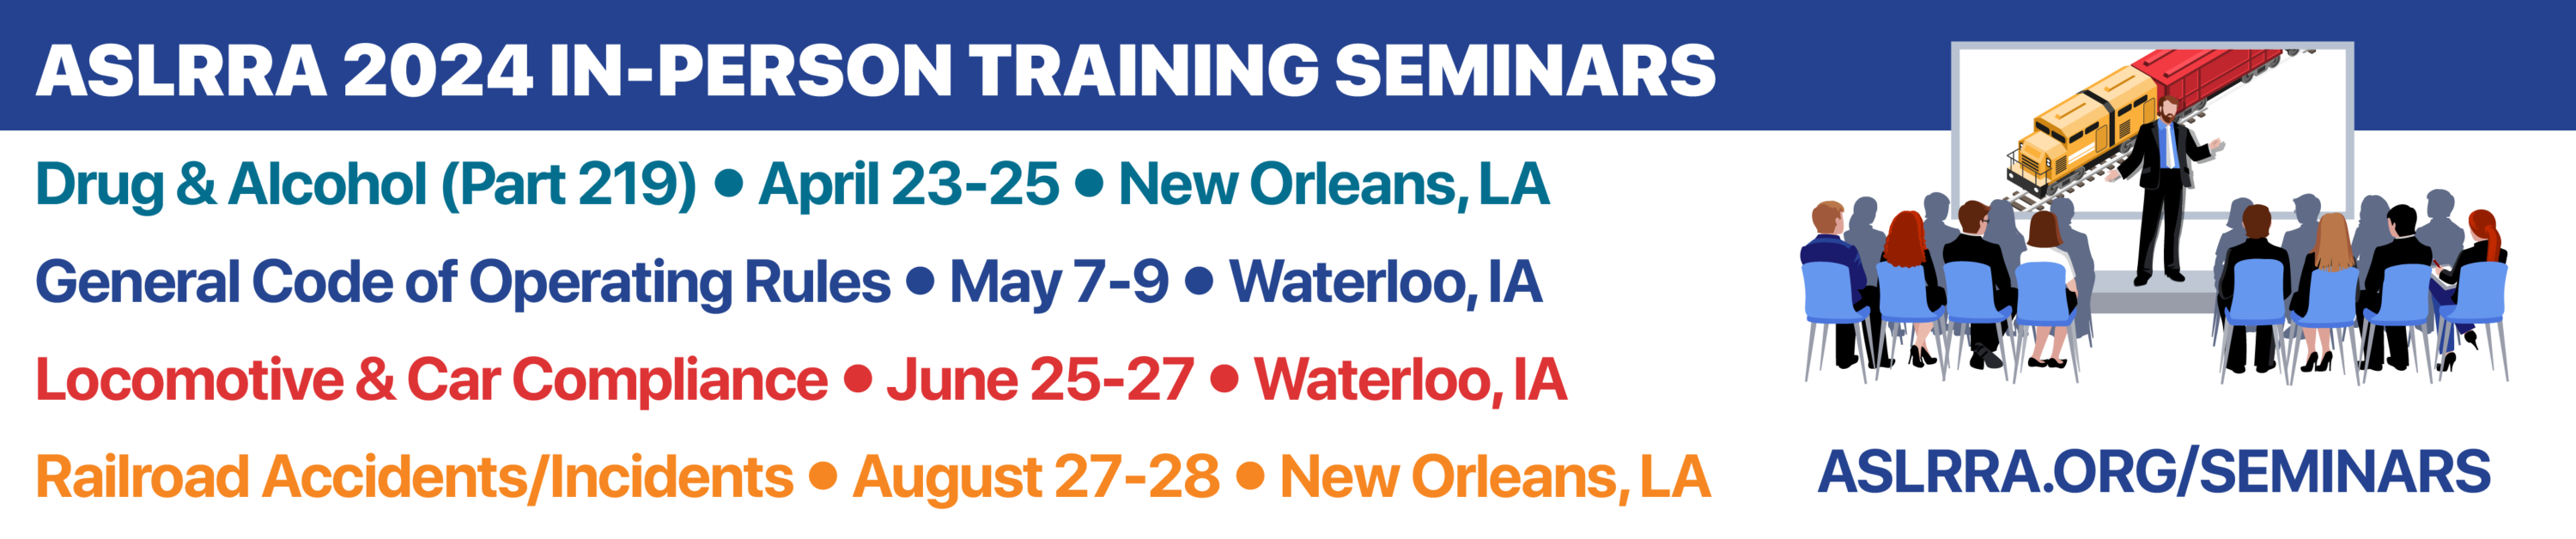 ASLRRA Training Seminars 2024